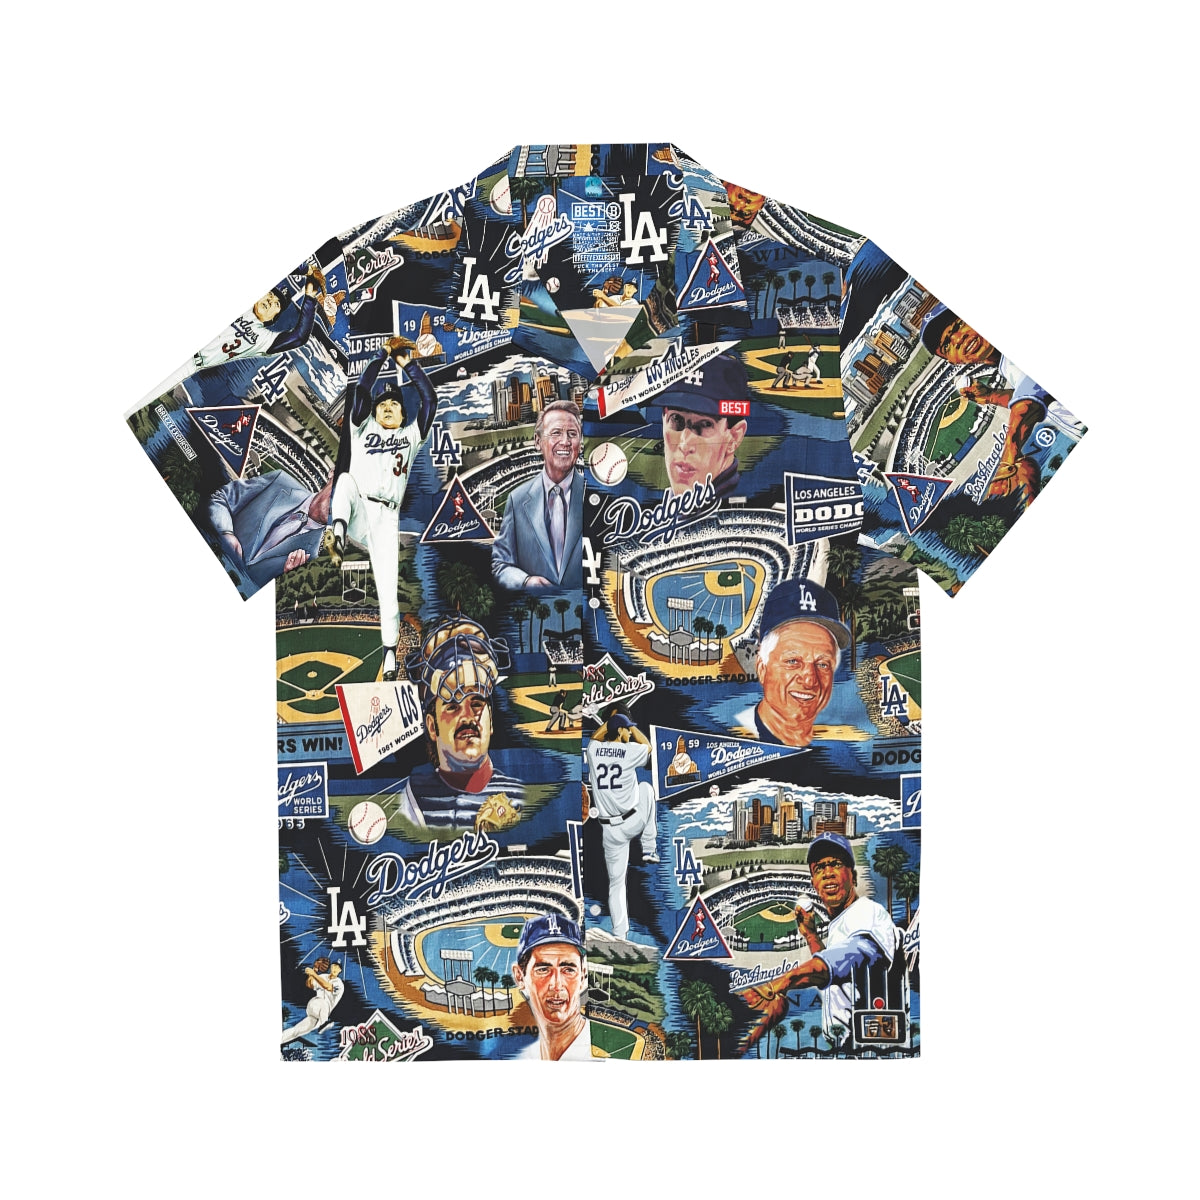 Los Angeles Dodgers Mlb 1 Summer Hawaiian Shirt And Shorts - Banantees